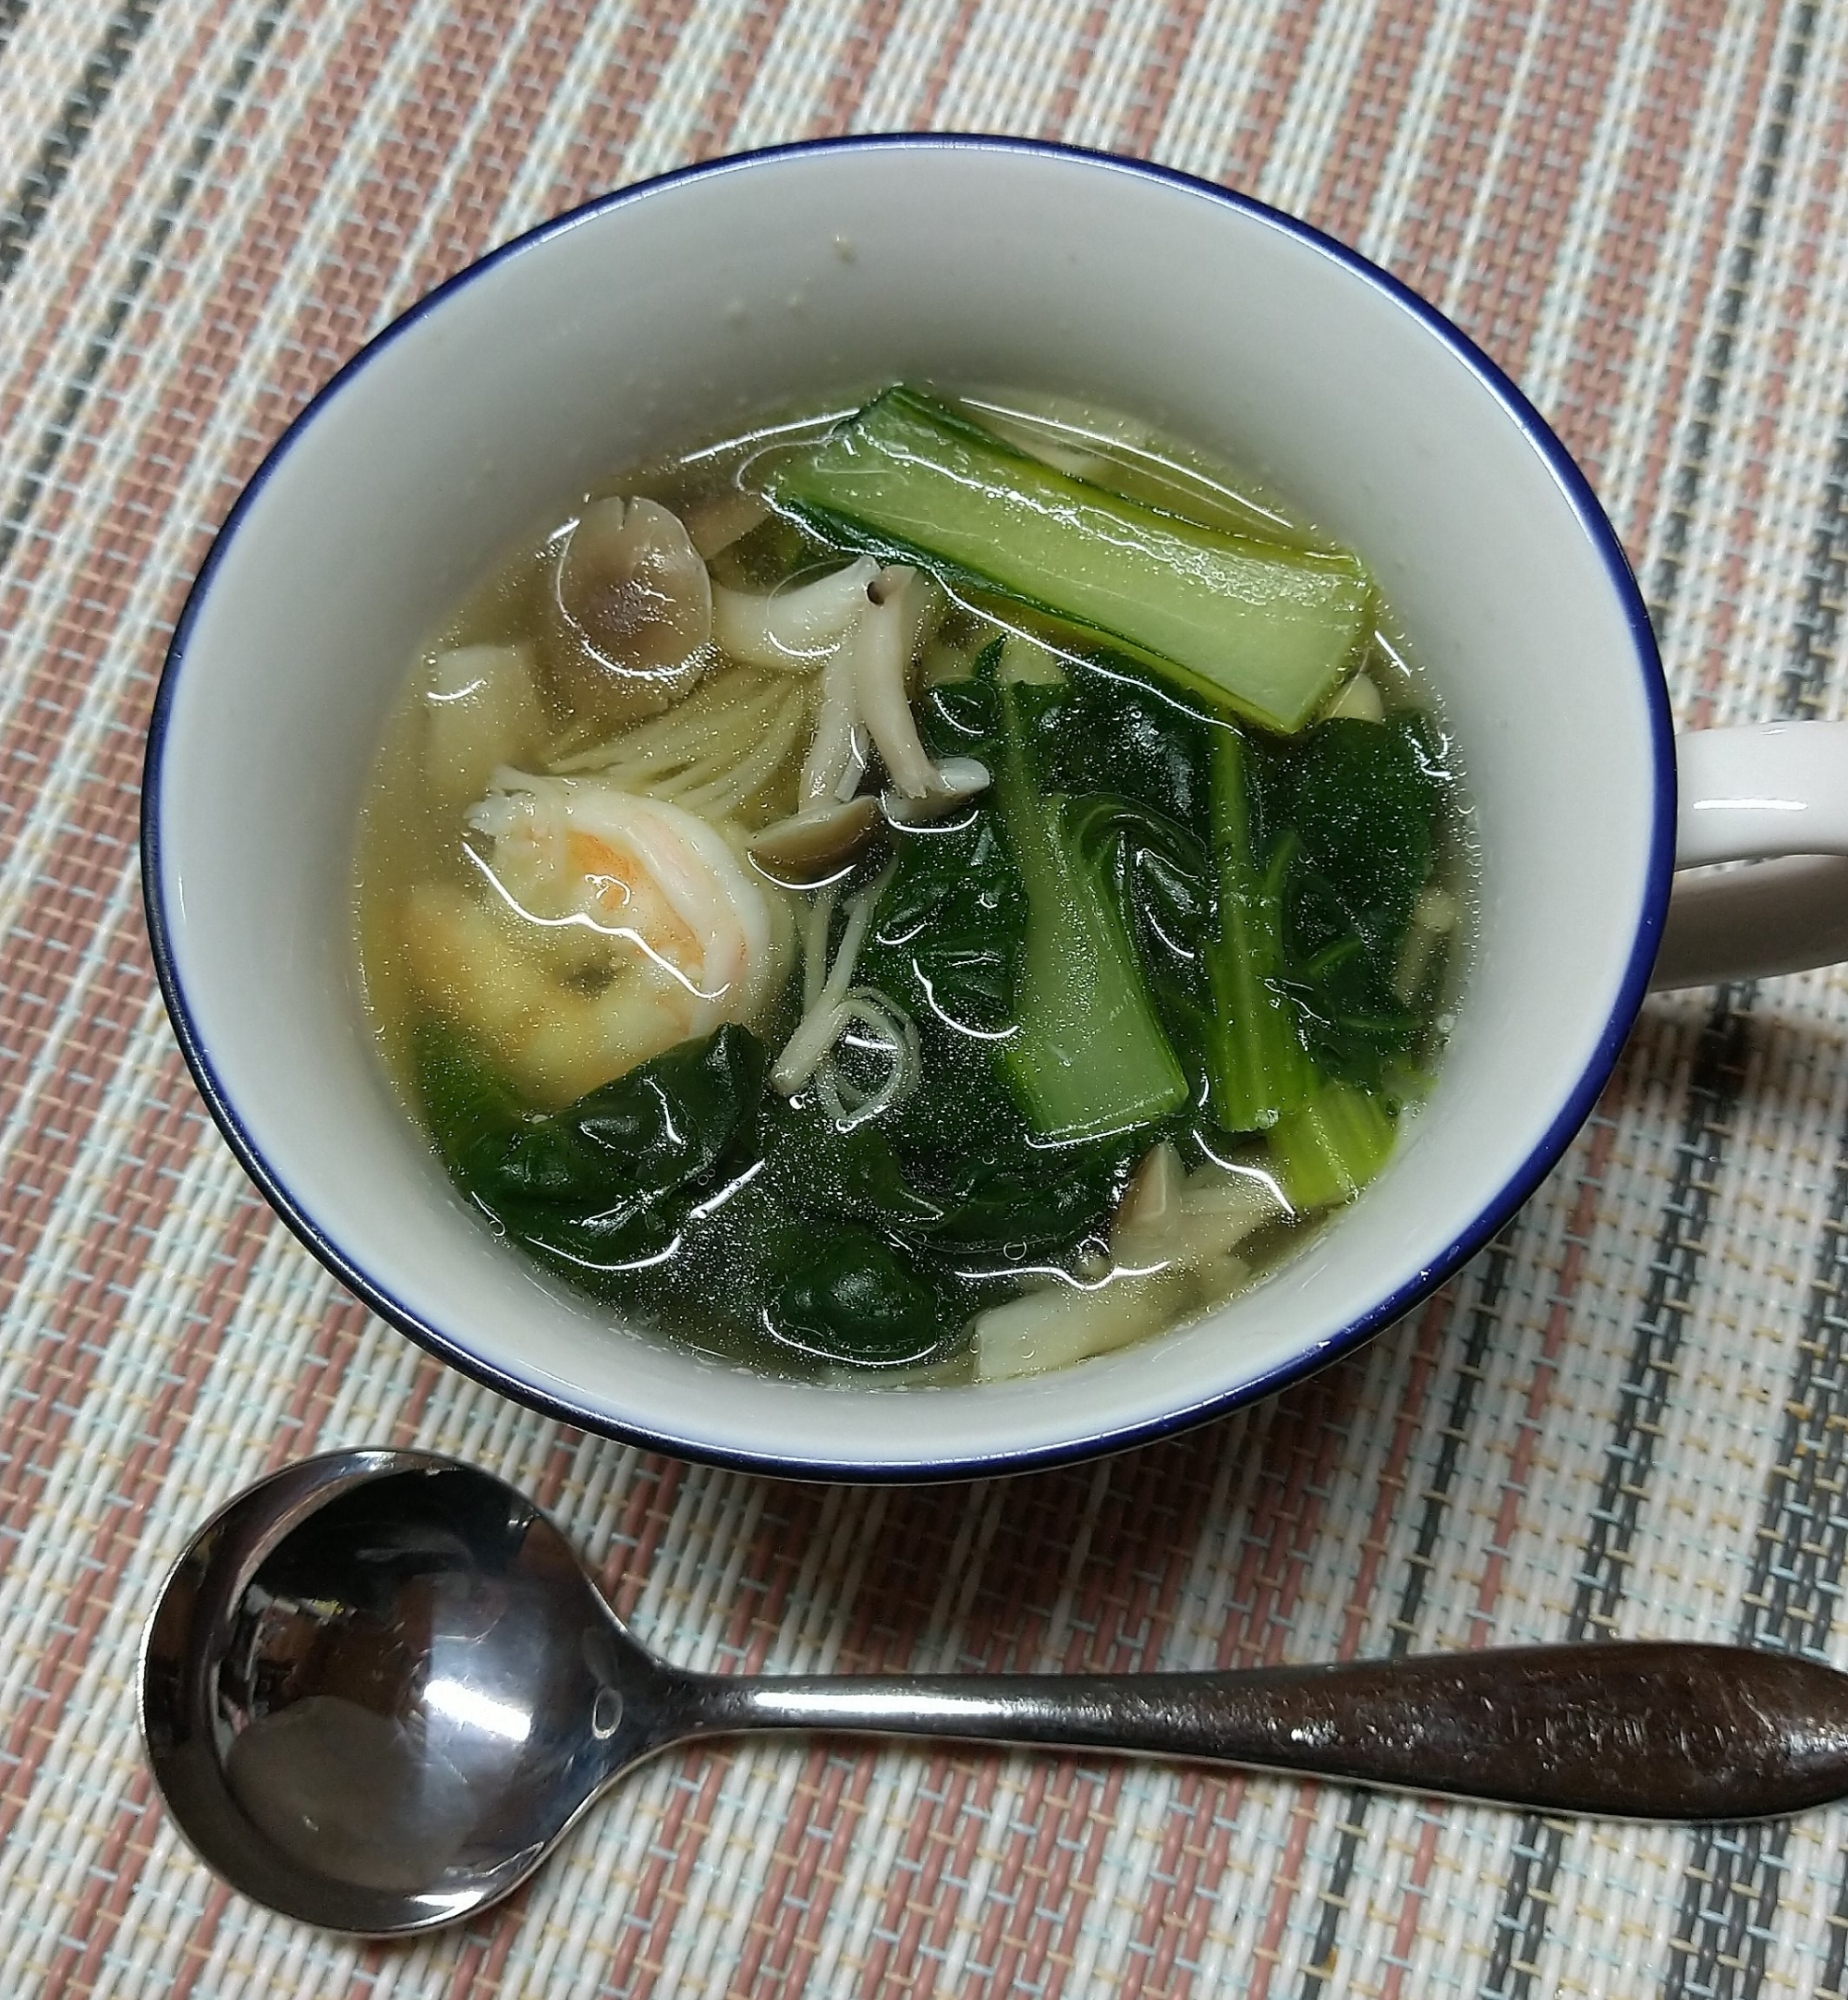 エビとタアサイの中華風スープ